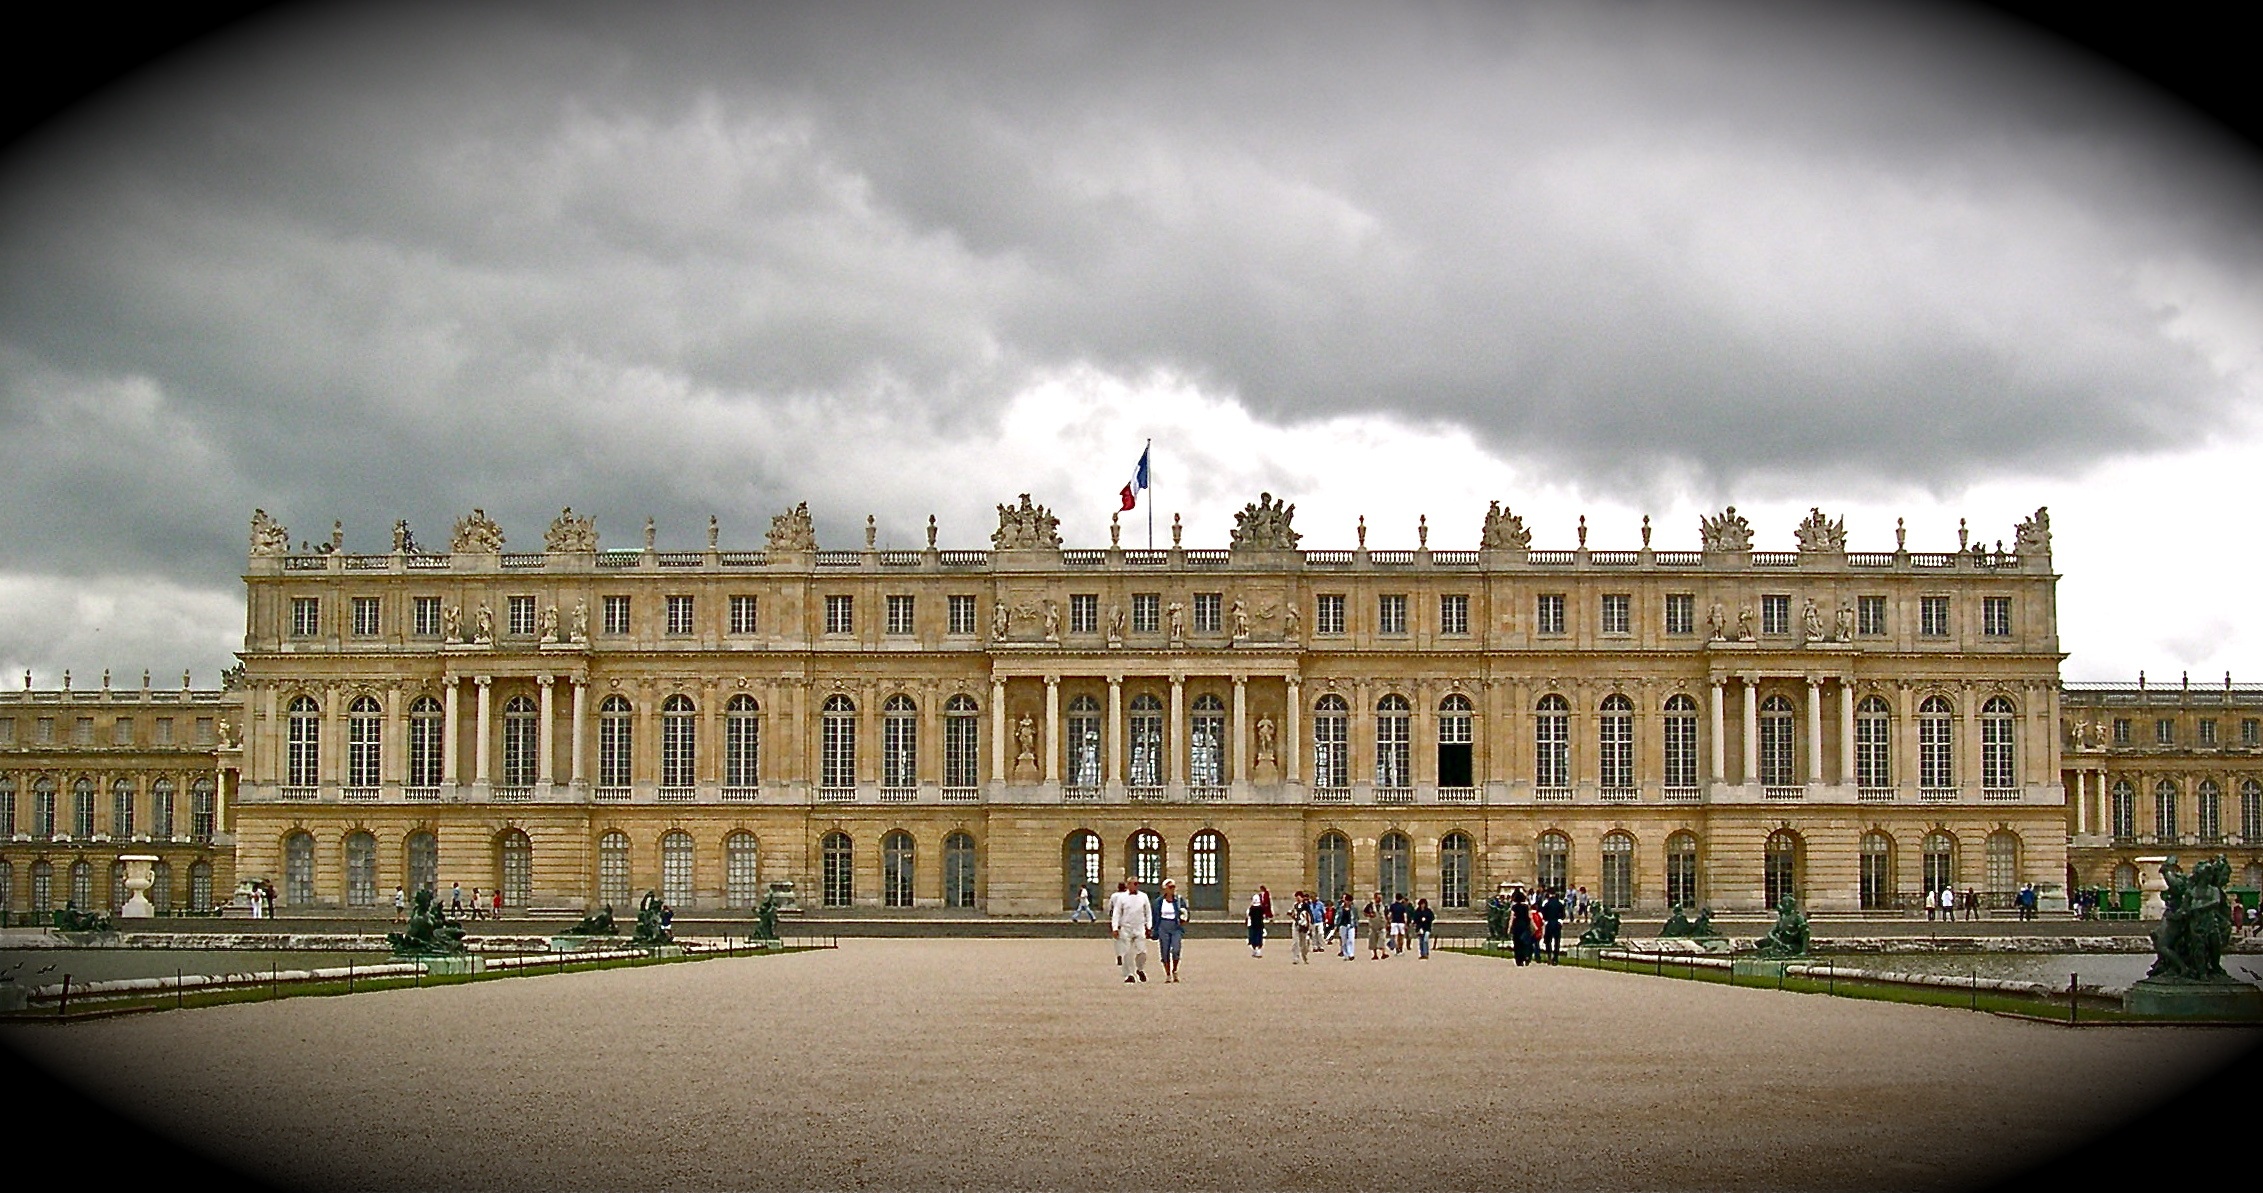 Man Made Palace Of Versailles 2263x1193